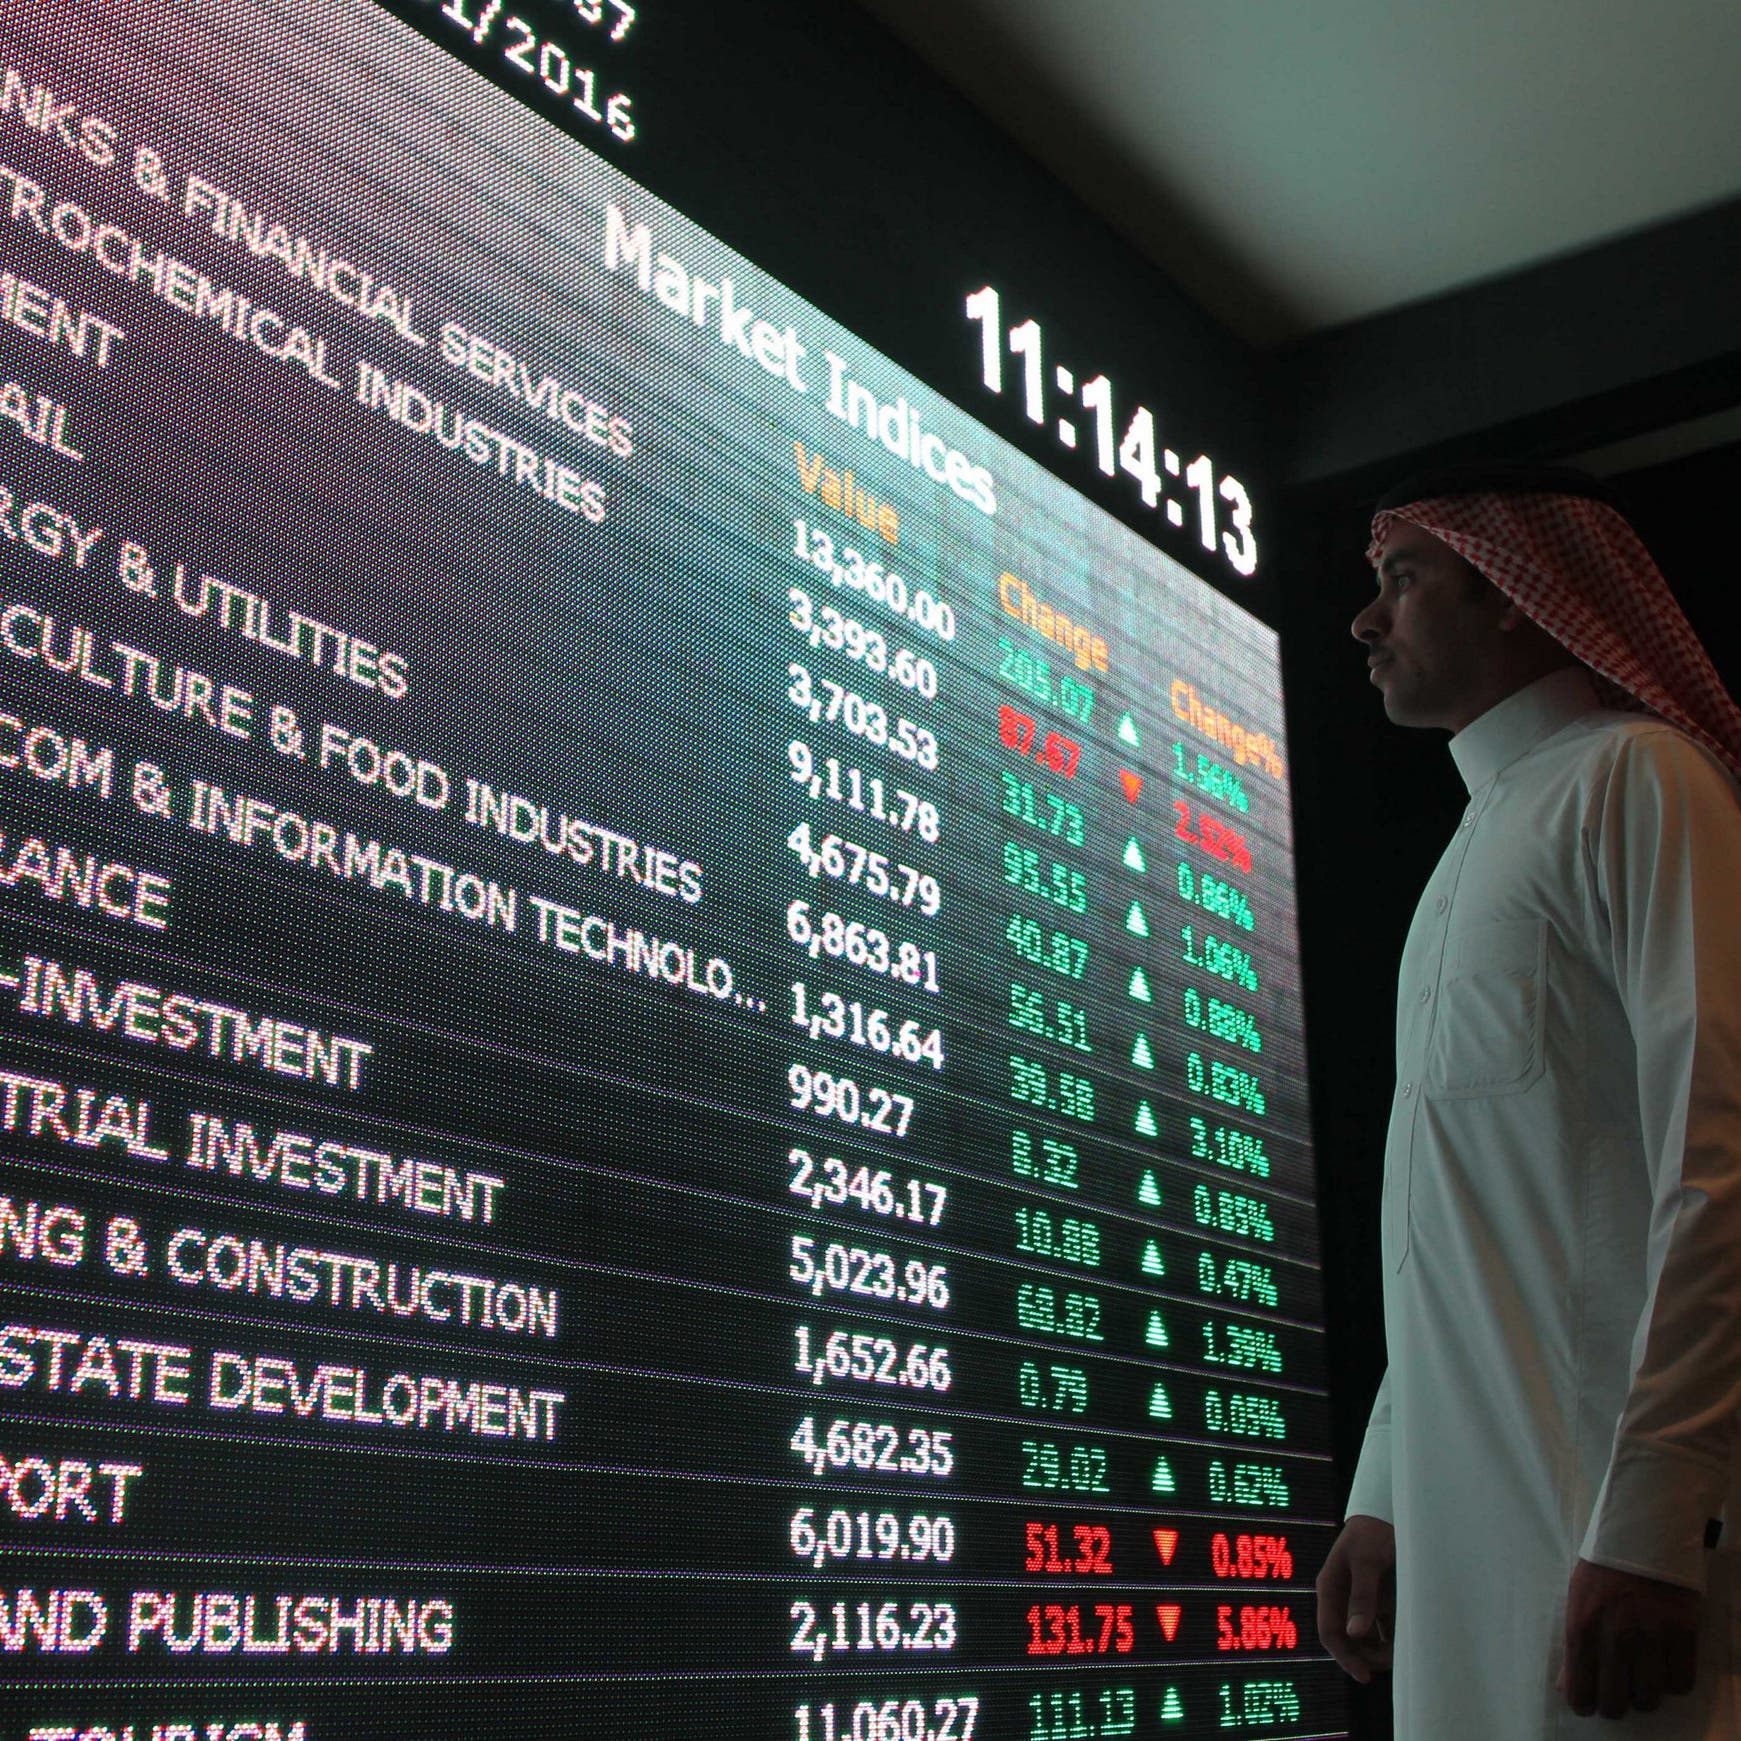  هيئة السوق السعودية تعلن إطلاق الدفعة الخامسة لتصريح تجربة التقنية المالية